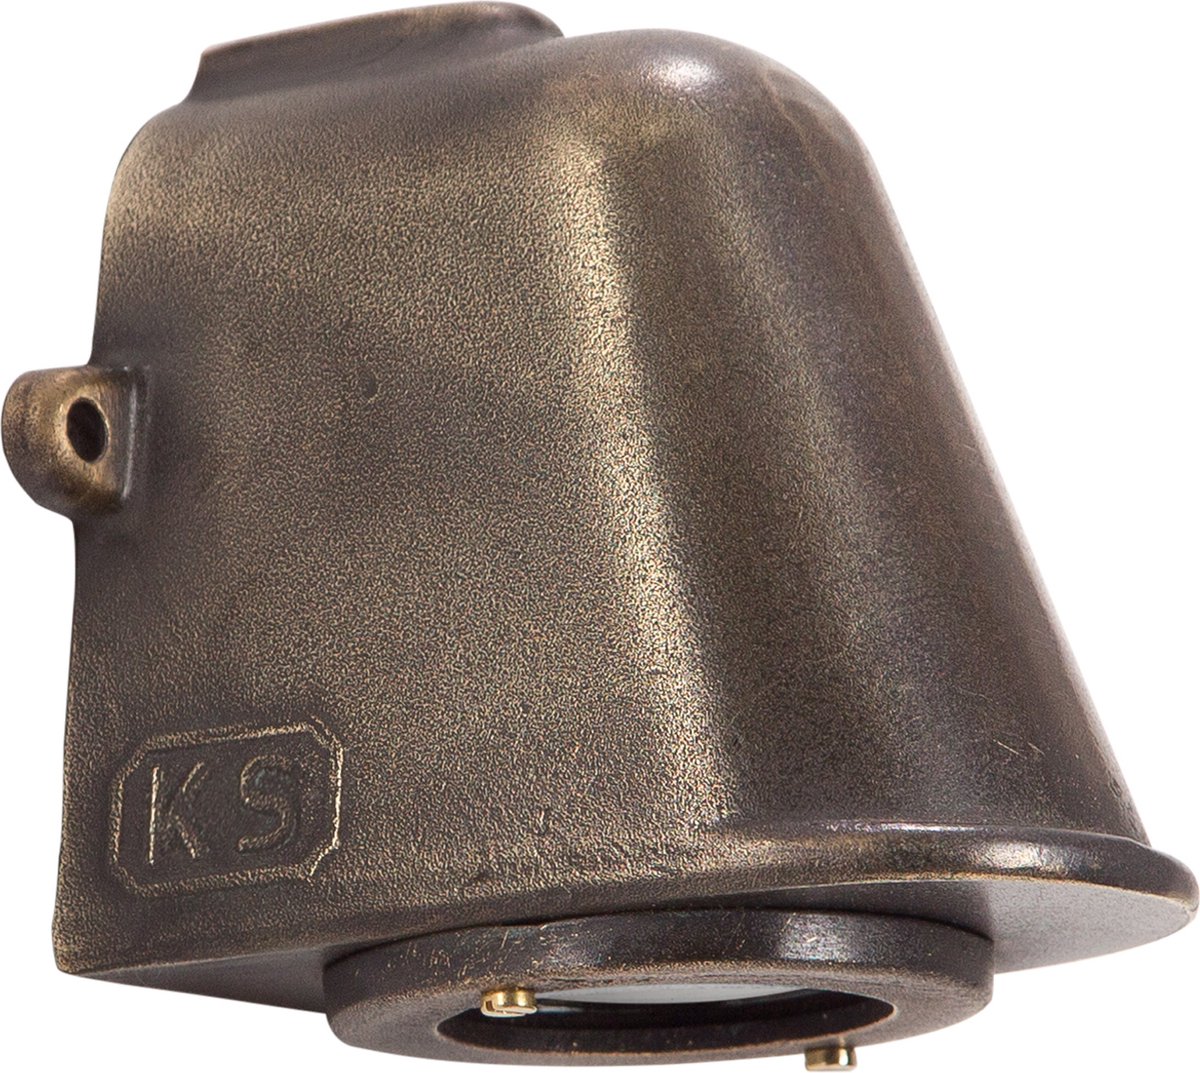 KS Verlichting - Offshore Brons - muurlamp - buitenlamp - inclusief GU10 lichtbron voorzien van schemersensor - zware kwaliteit brons - zeer duurzaam - 25 jaar garantie op armatuur